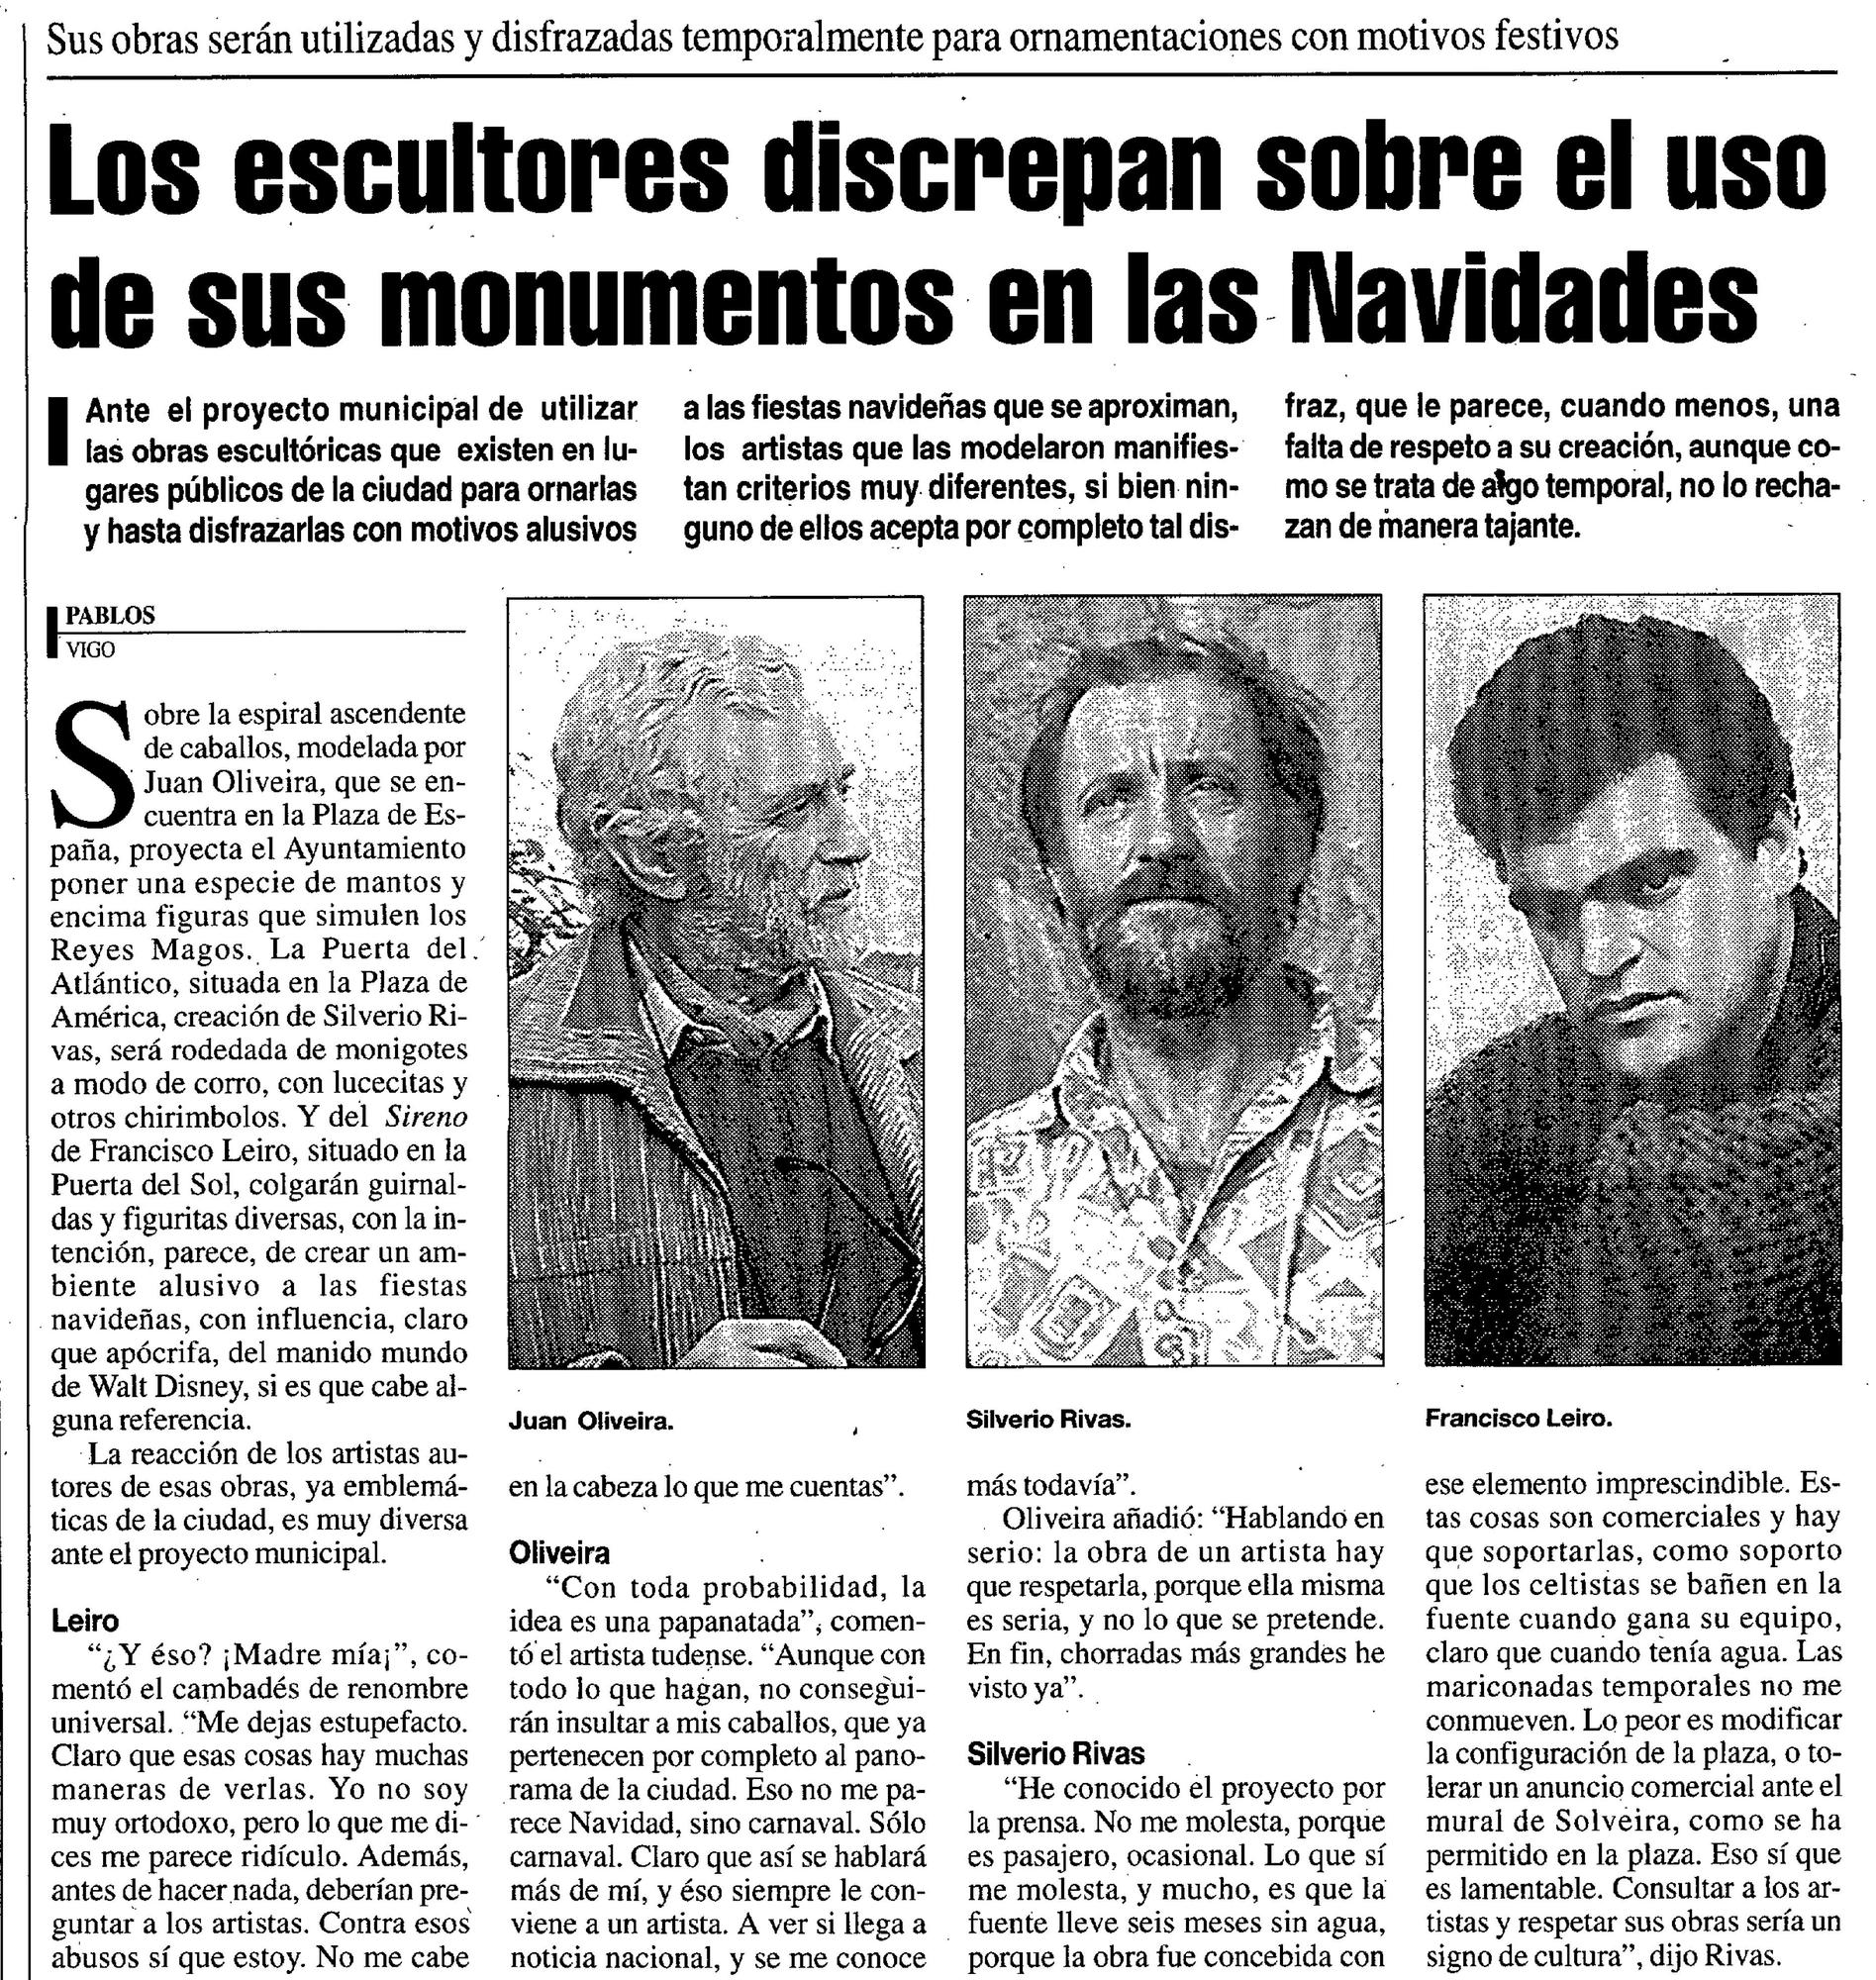 Página de FARO DE VIGO en la que los escultores Juan Oliveira, Francisco Leiro y Silverio Rivas opinaron sobre los adornos de Navidad en sus esculturas.